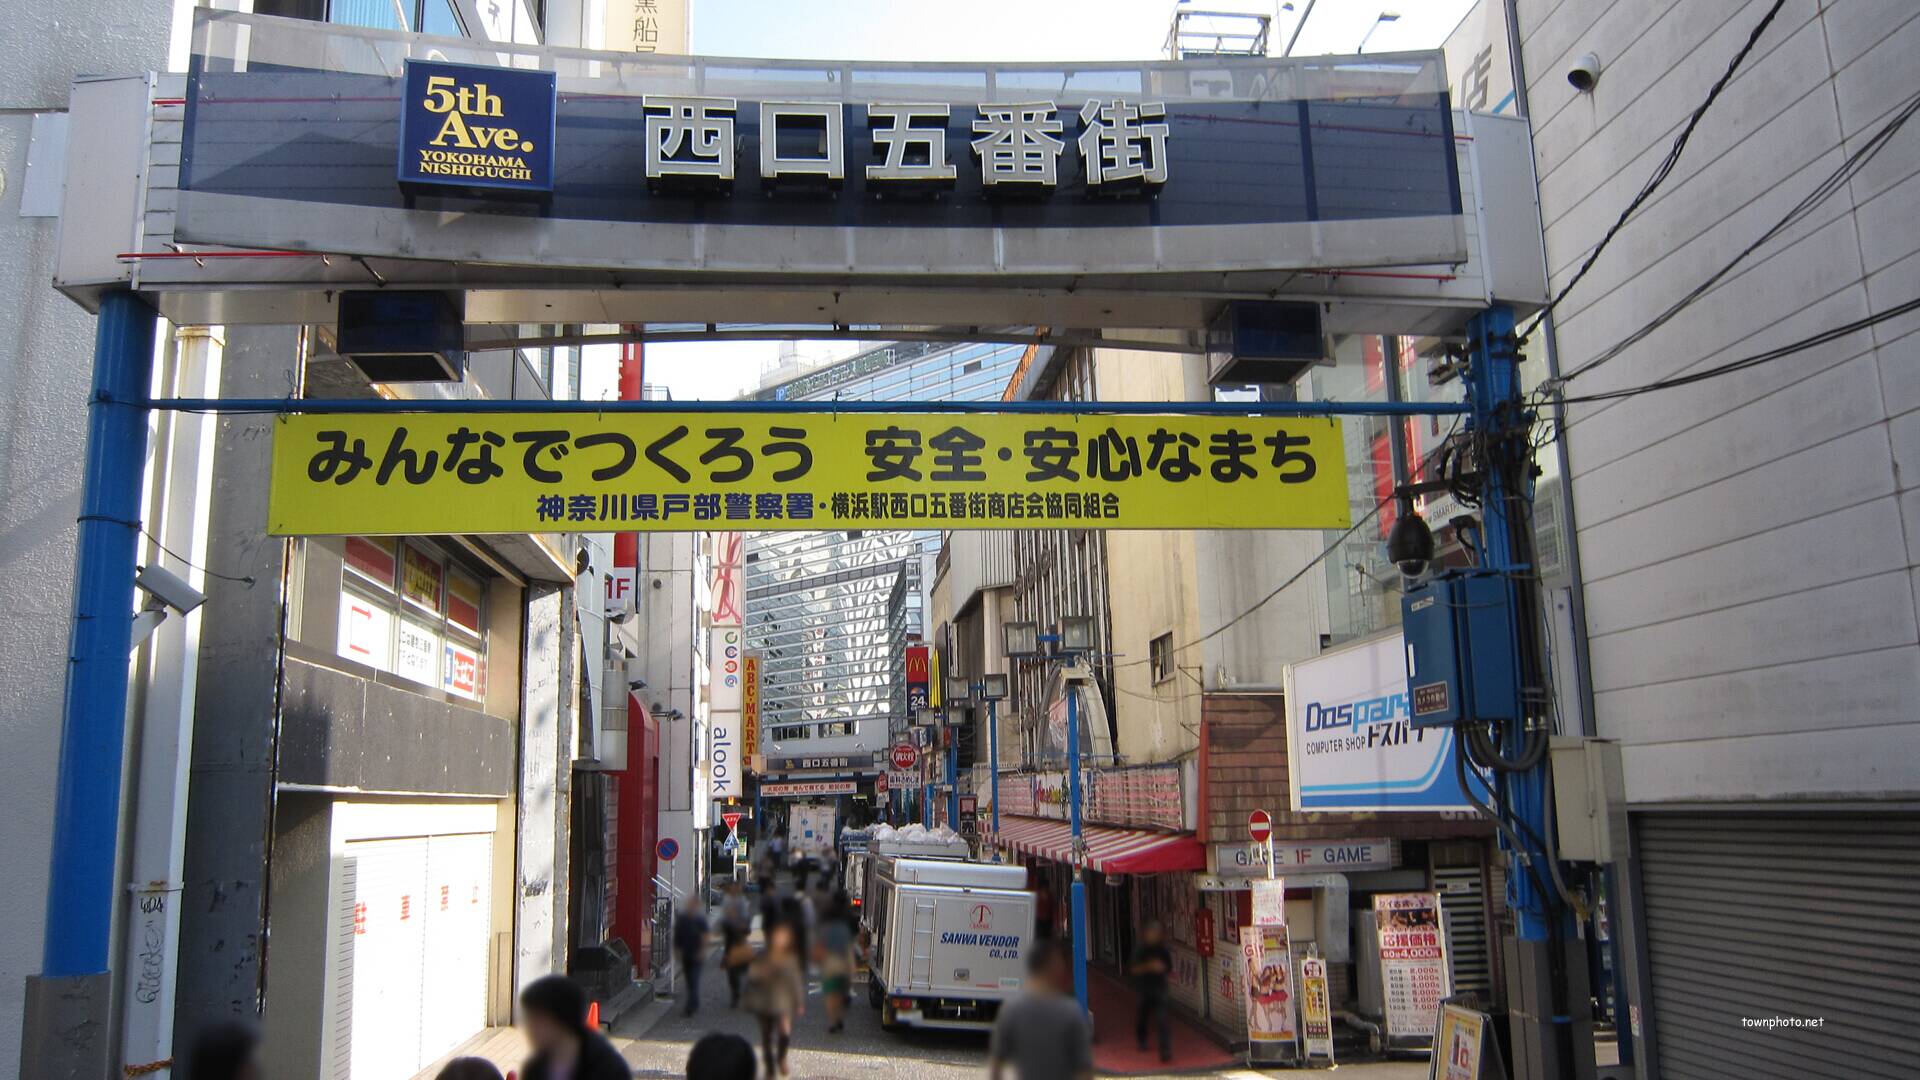 写真54枚 横浜駅みなみ西口 五番街 彫刻通りの風景 街並み紹介